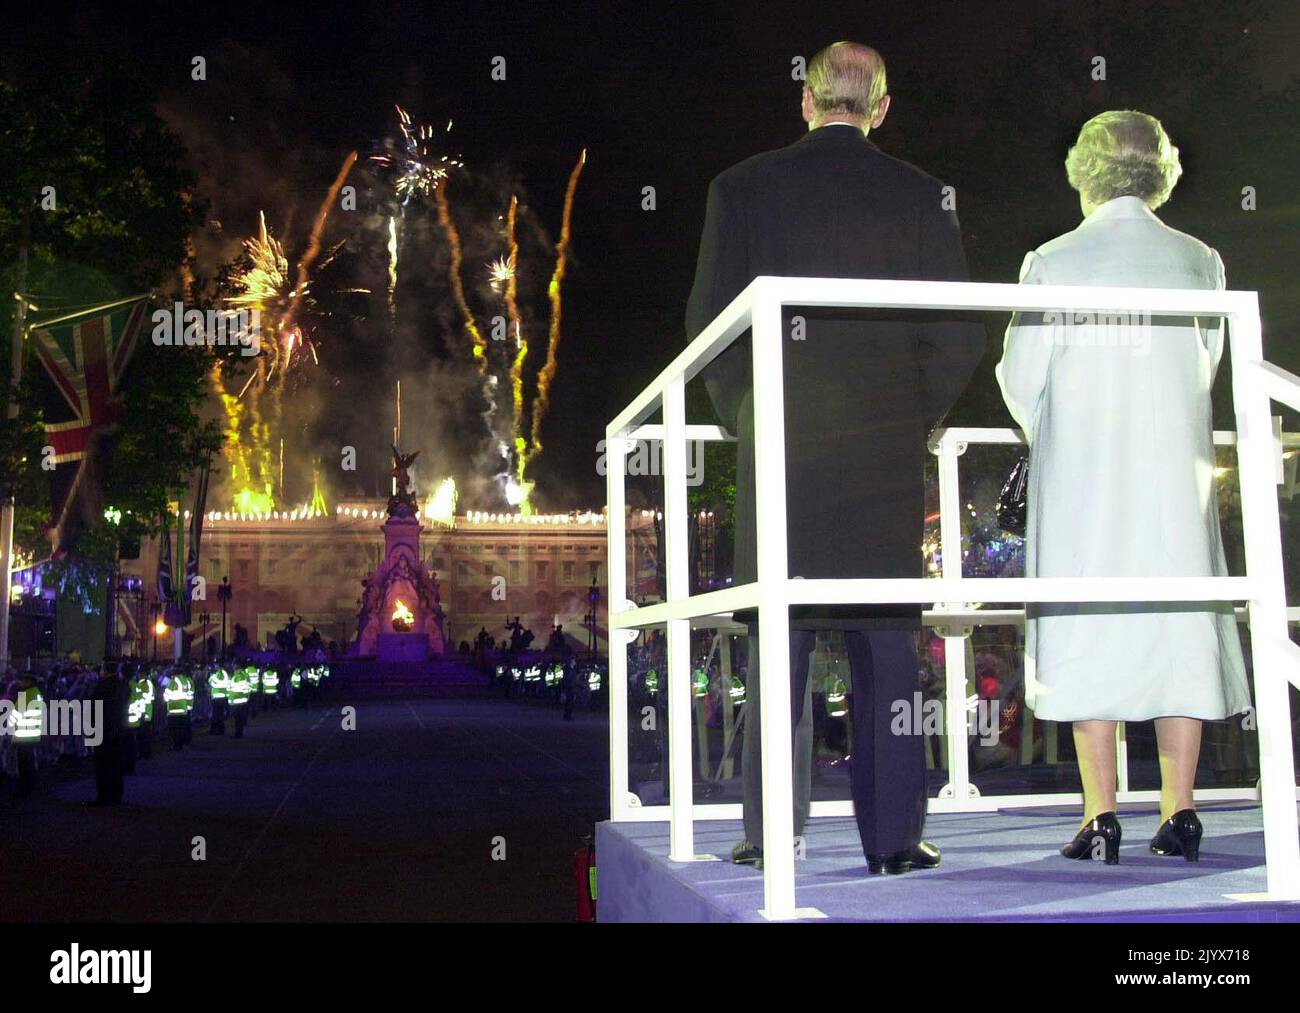 Foto de archivo de fecha 03/06/2002 de la reina Isabel II y el duque de Edimburgo viendo los fuegos artificiales estallaron sobre el Palacio de Buckingham en Londres, para conmemorar su Jubileo de Oro. La reina murió pacíficamente en Balmoral esta tarde, ha anunciado el Palacio de Buckingham. Fecha de emisión: Jueves 8 de septiembre de 2022. Foto de stock